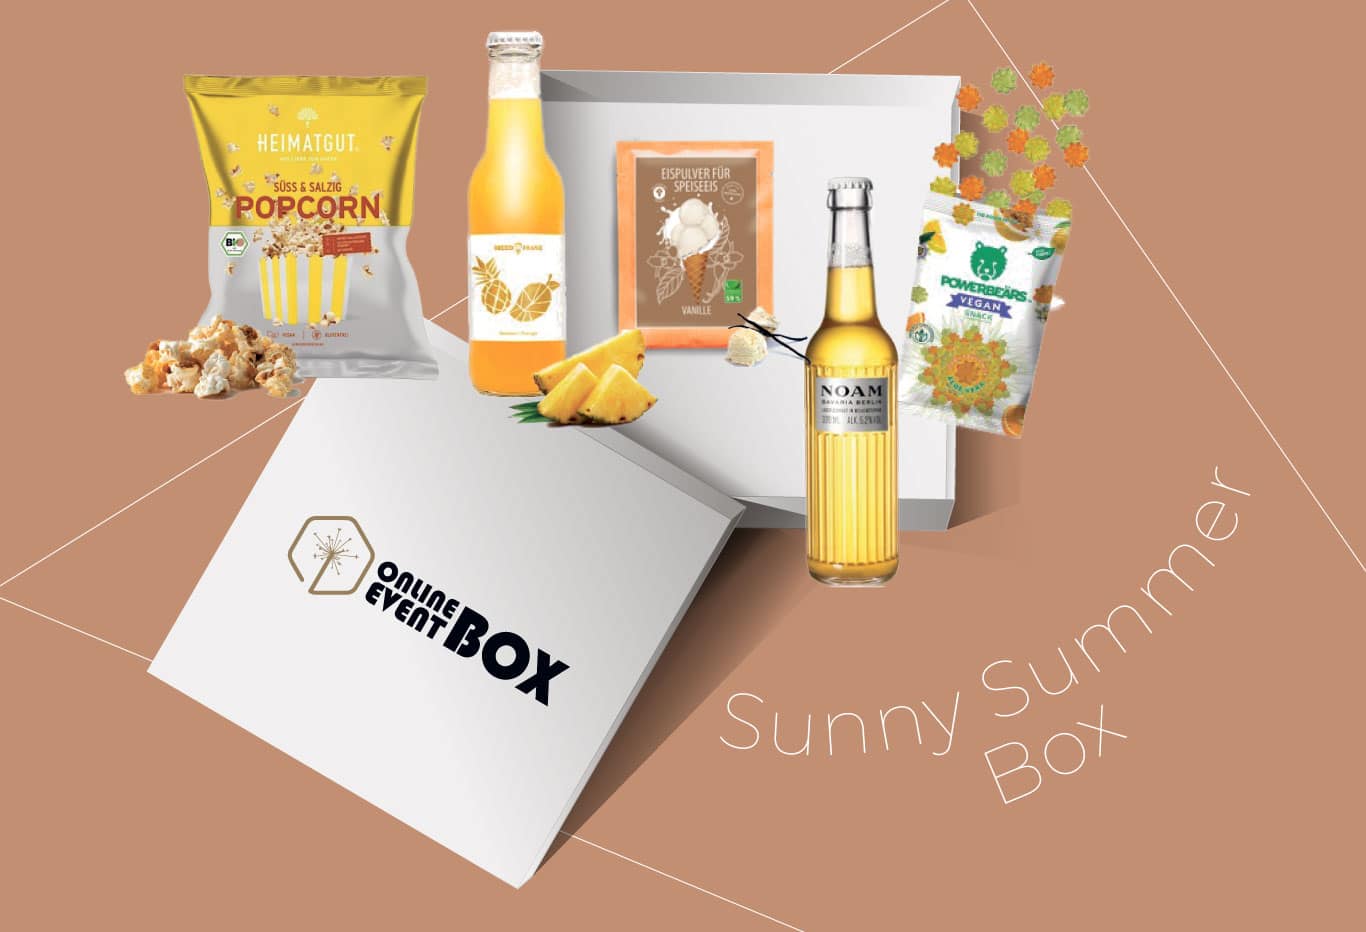 Die Sonny Summer Box macht ihrem Namen alle Ehre. Sie beinhaltet alles was Du für einen schönen Sommertag benötigst: Mit dieser Box erhält Du die Möglichkeit selber Speiseeis herzustellen, angenehm süß-salziges Popcorn, erfrischendes Lager-Bier, vegane Gummibärchen und einen fruchtigen Mango-Ananas-Drink